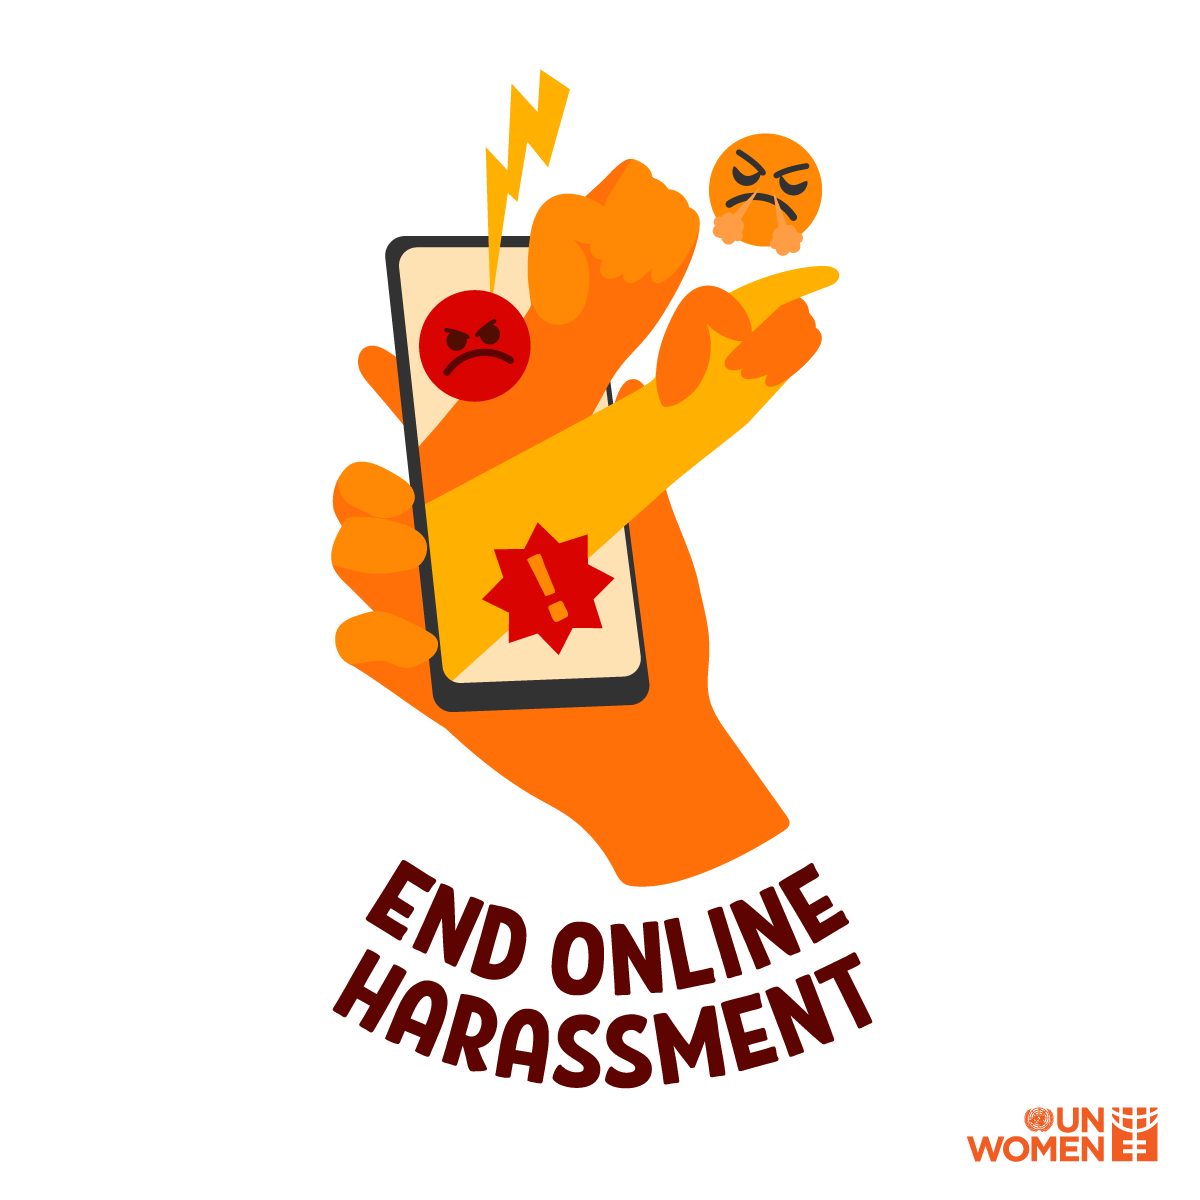 End online harassment